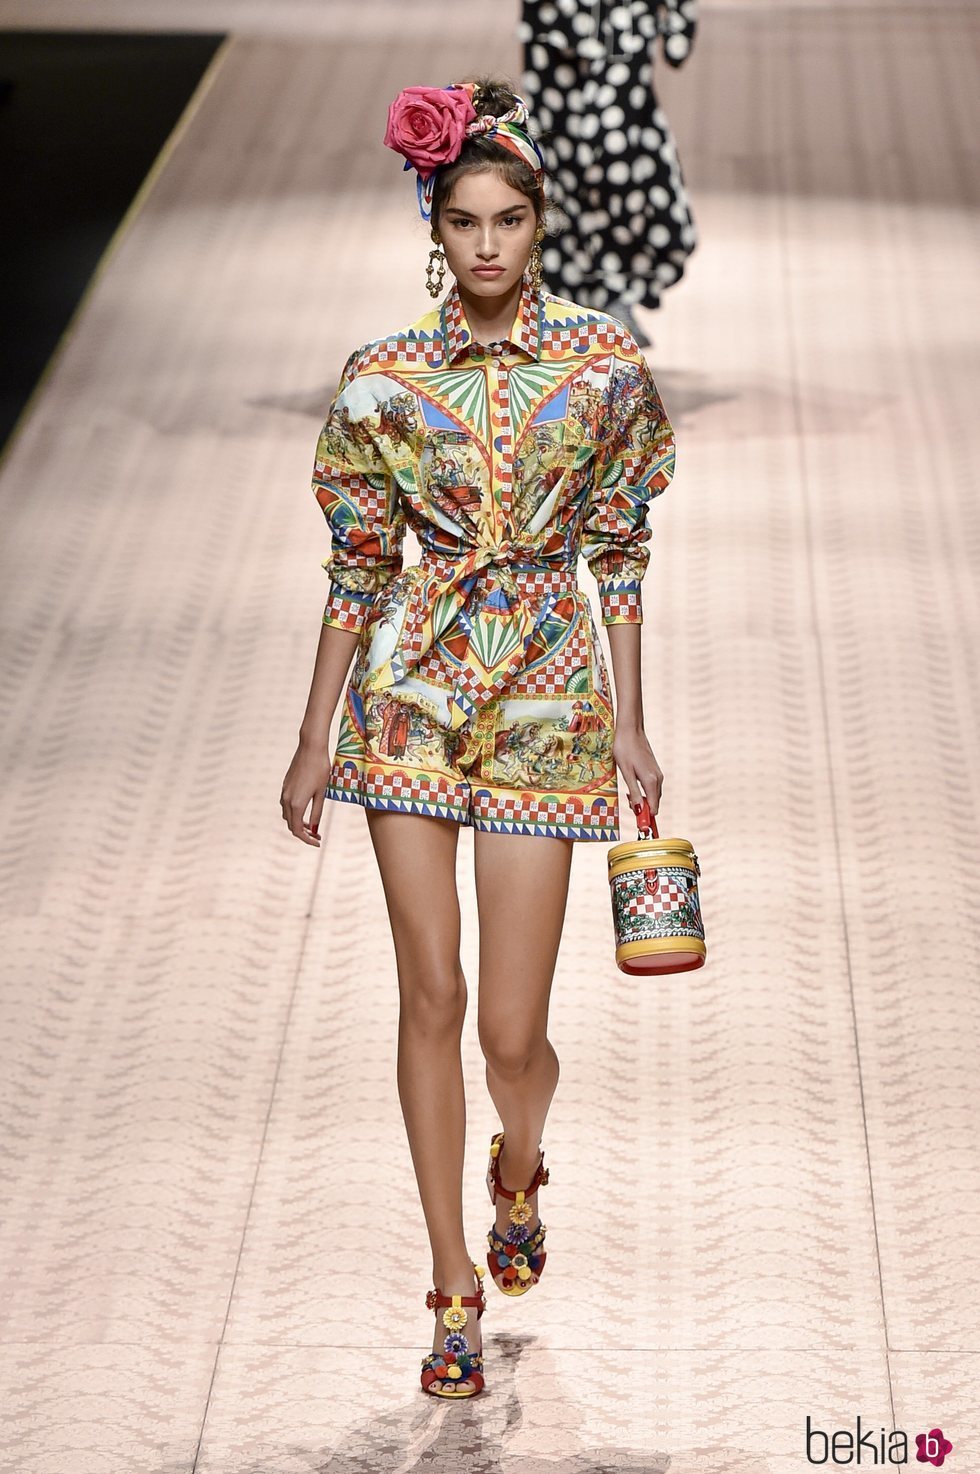 Vestido multicolor de Dolce&Gabbana primavera/verano 2019 en la Milán Fashion Week